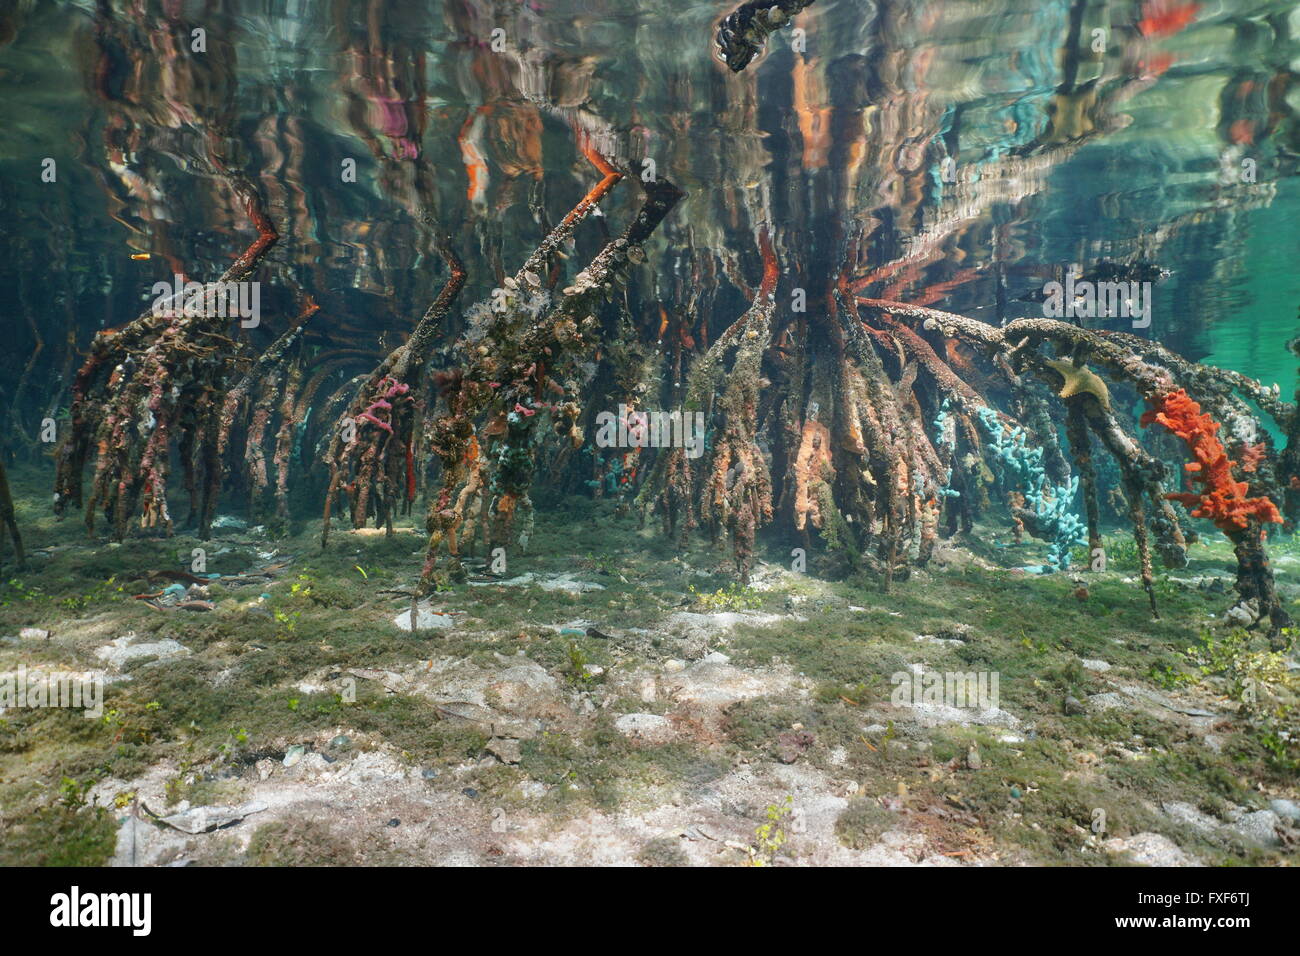 Racines de mangrove dans l'eau peu profonde reflétée ci-dessous la surface de l'eau, scène naturelles, mer des Caraïbes Banque D'Images